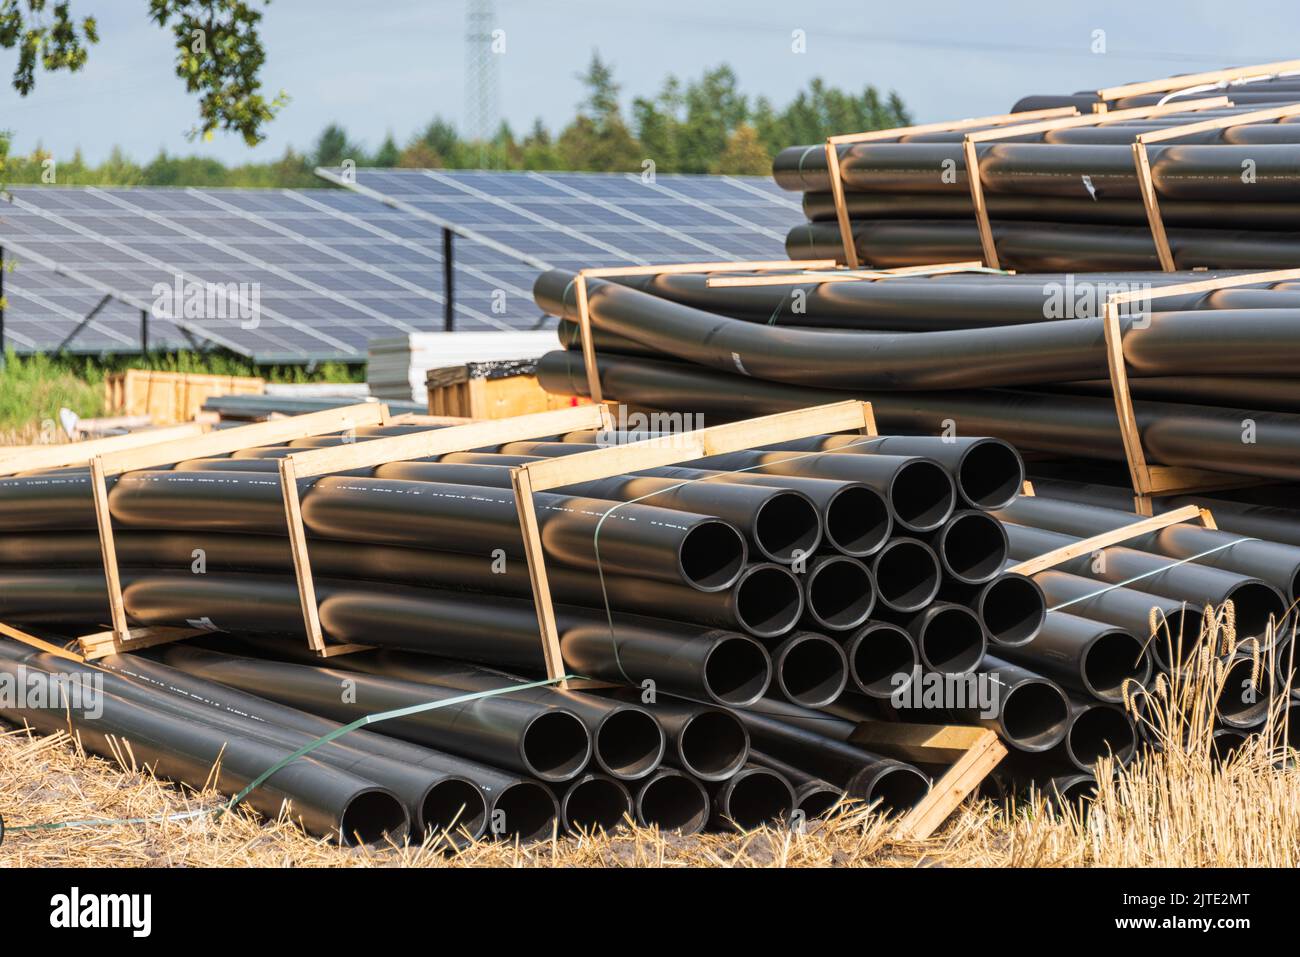 Baumateriallagerung auf einer Großbaustelle für grünen Solarstrom auf einer Baustelle en Schleswig-Holstein Foto de stock